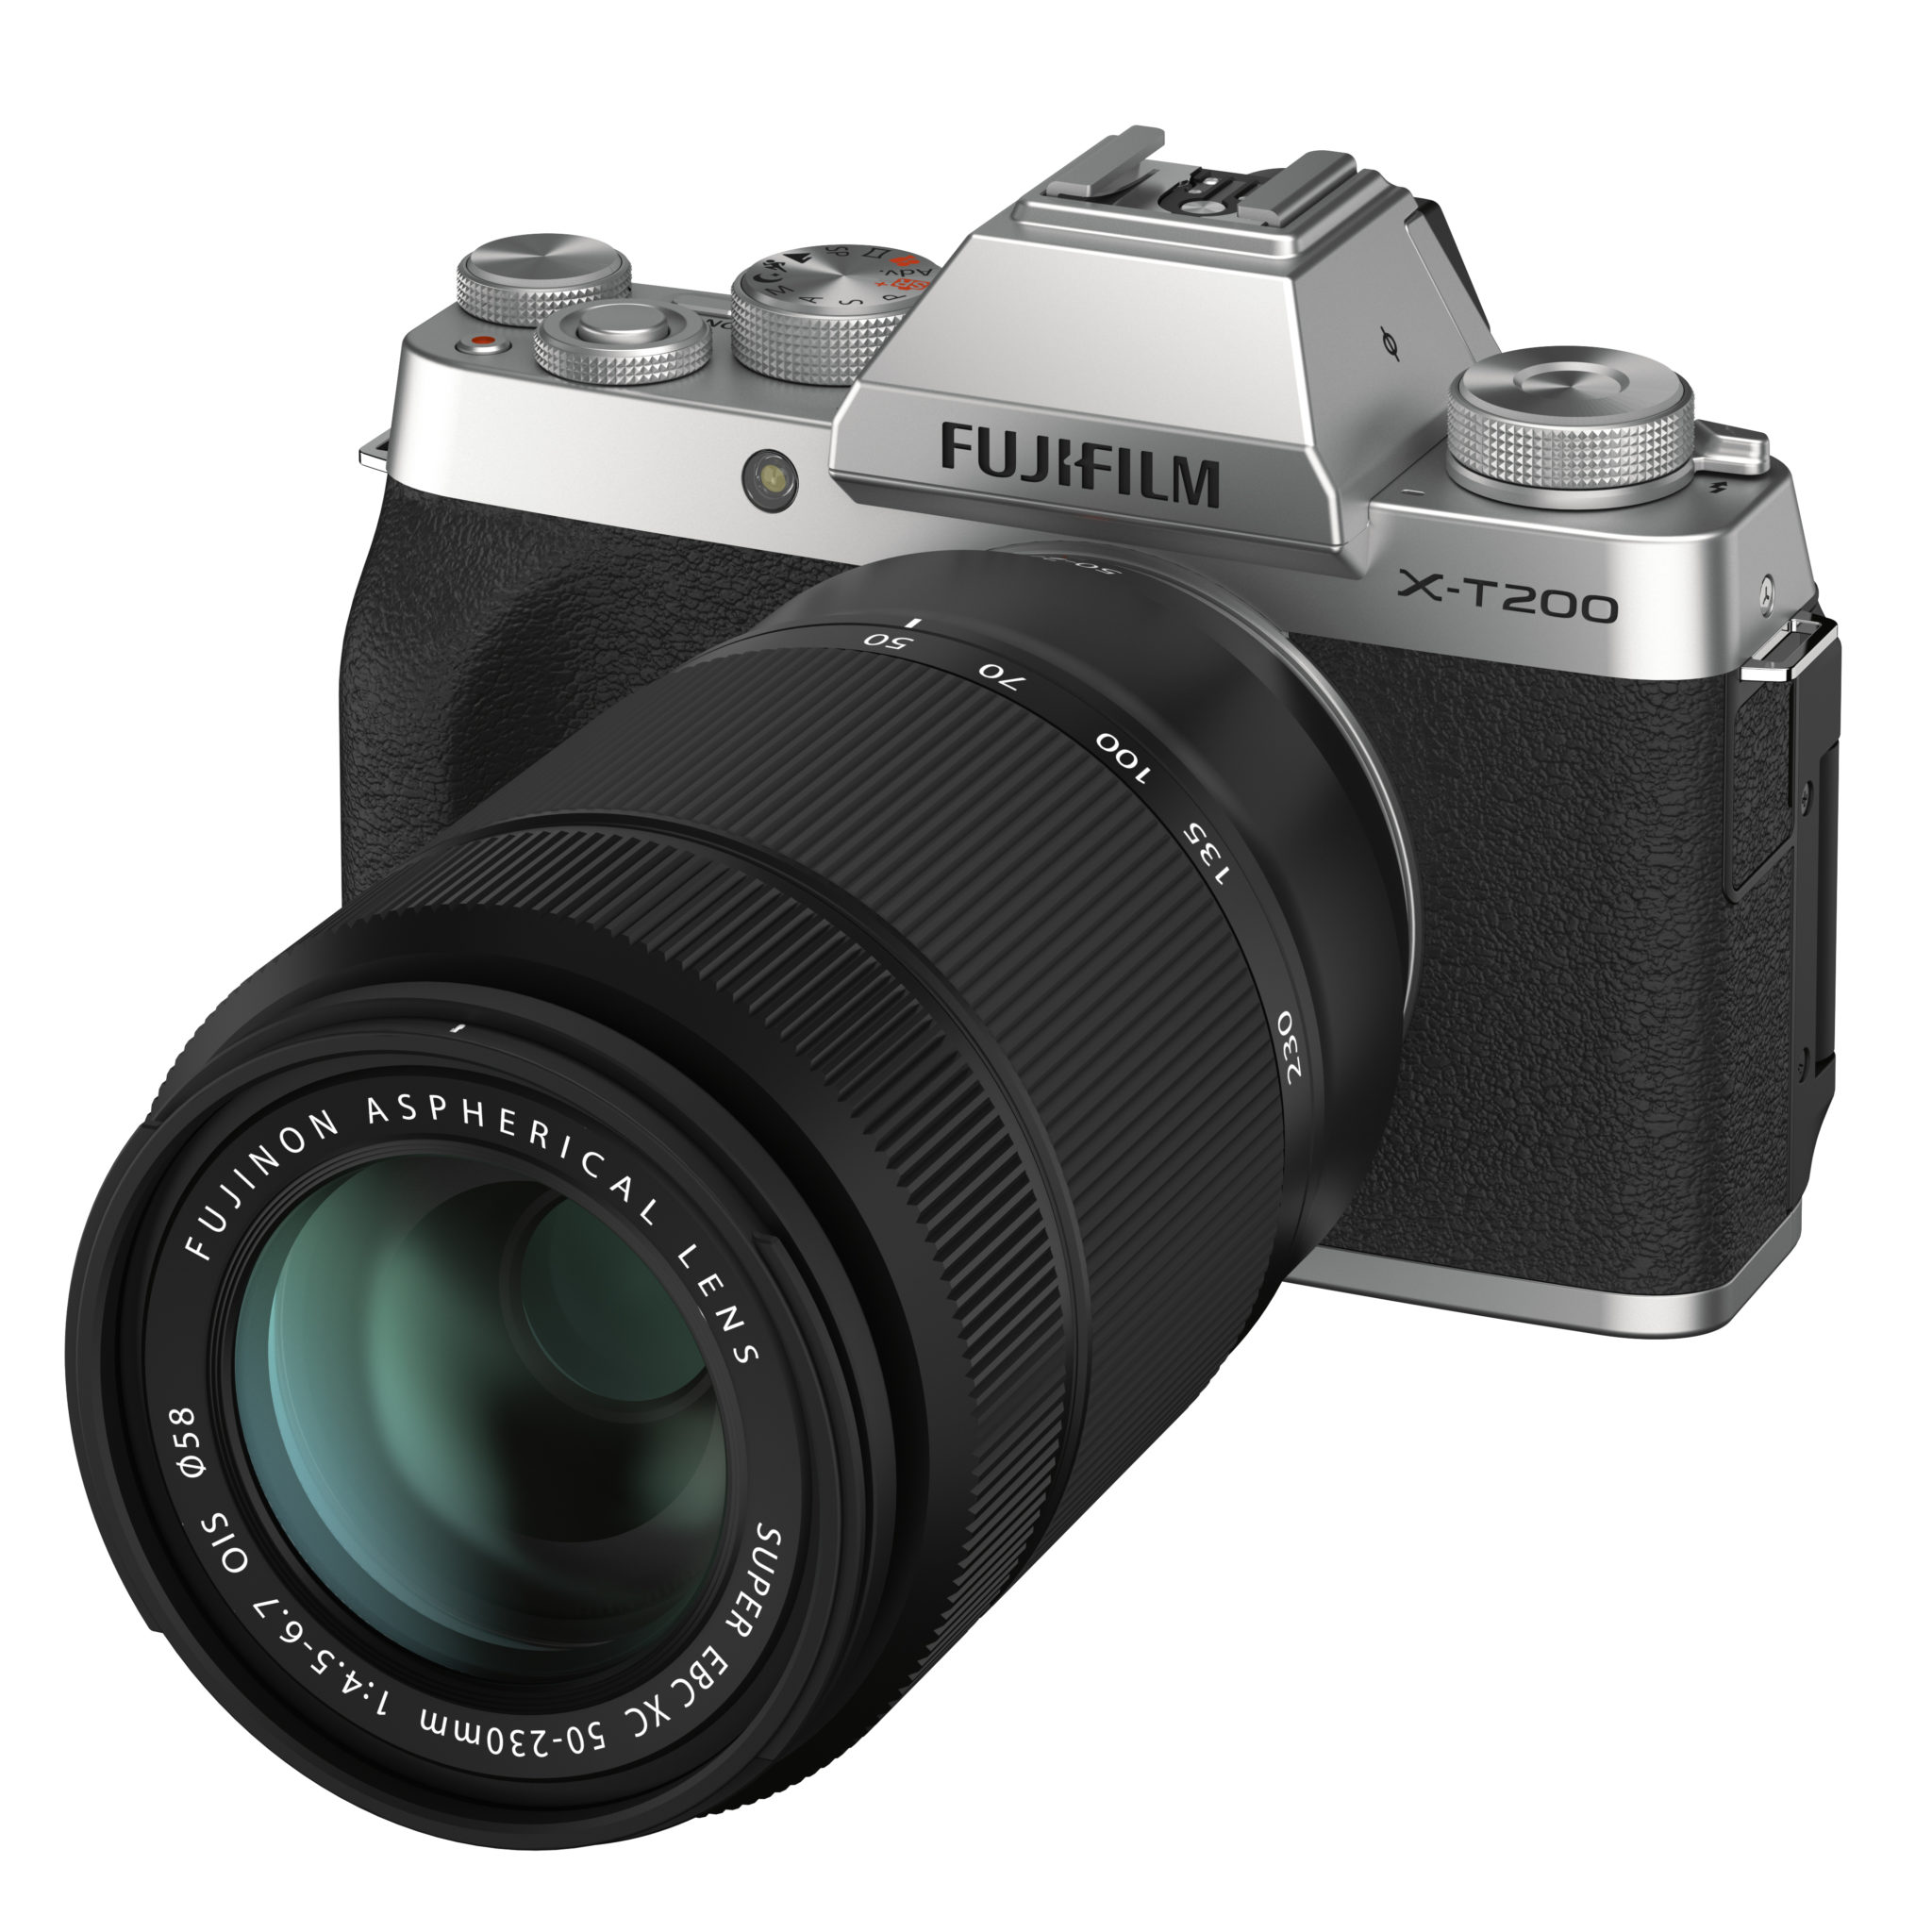 Fujifilm x-t200